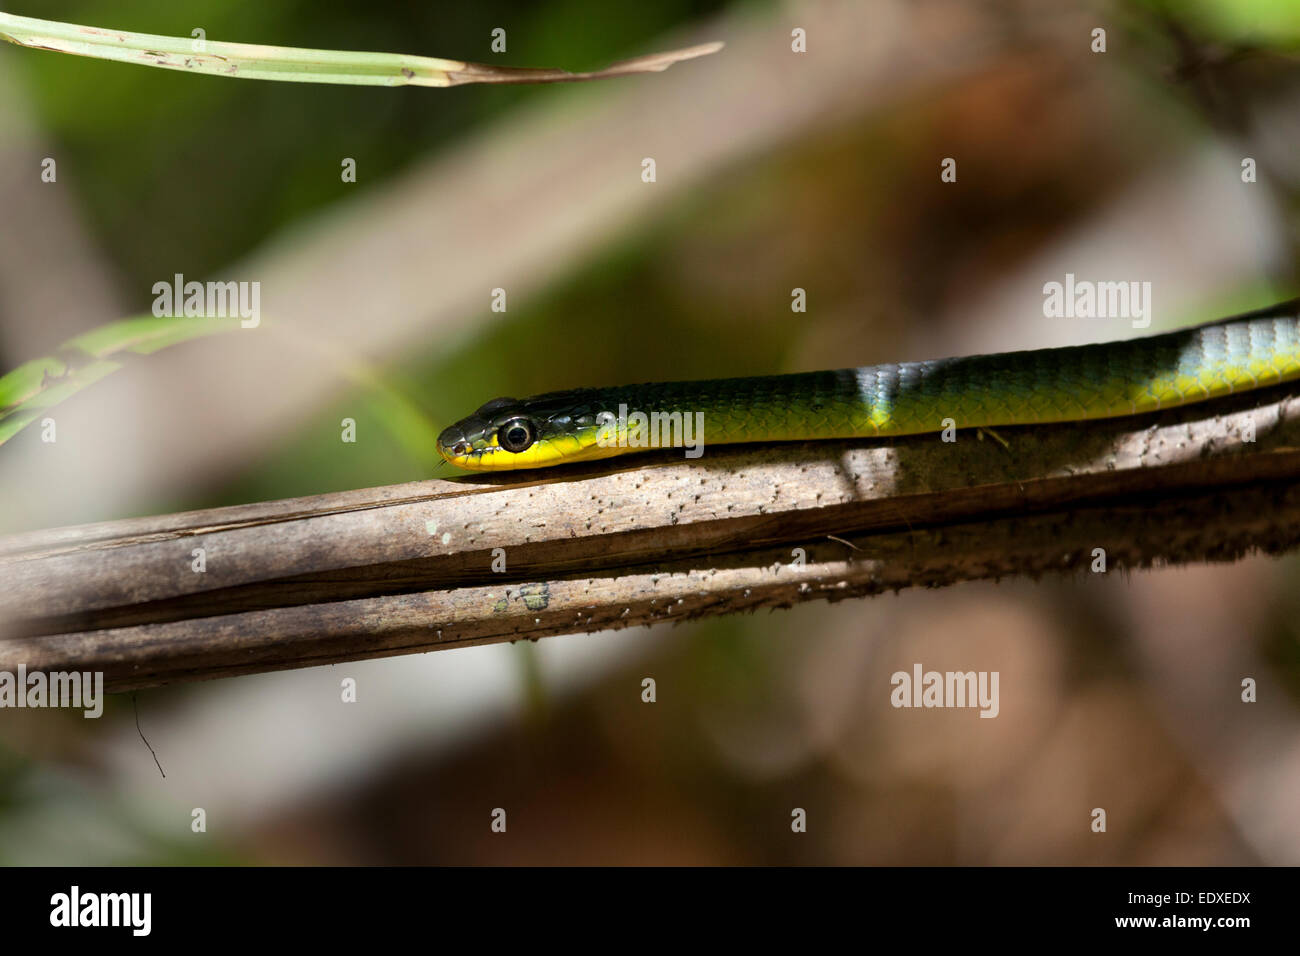 Comune di serpente verde o albero snake in Eugenella National Park, Australia Foto Stock